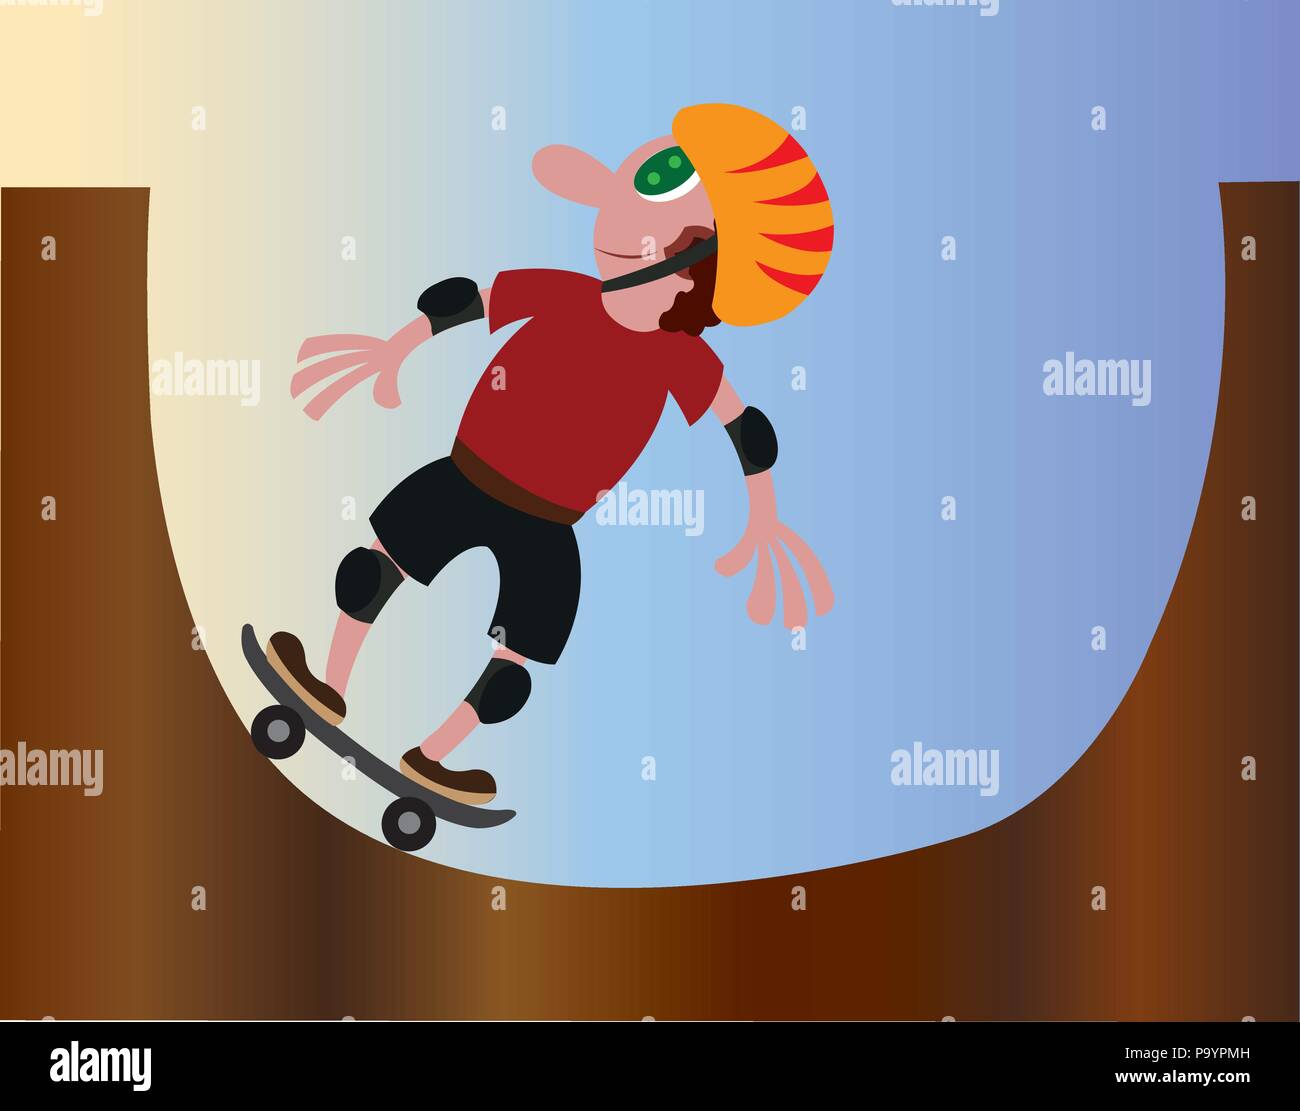 Un jeune à patiner à un skate park Illustration de Vecteur